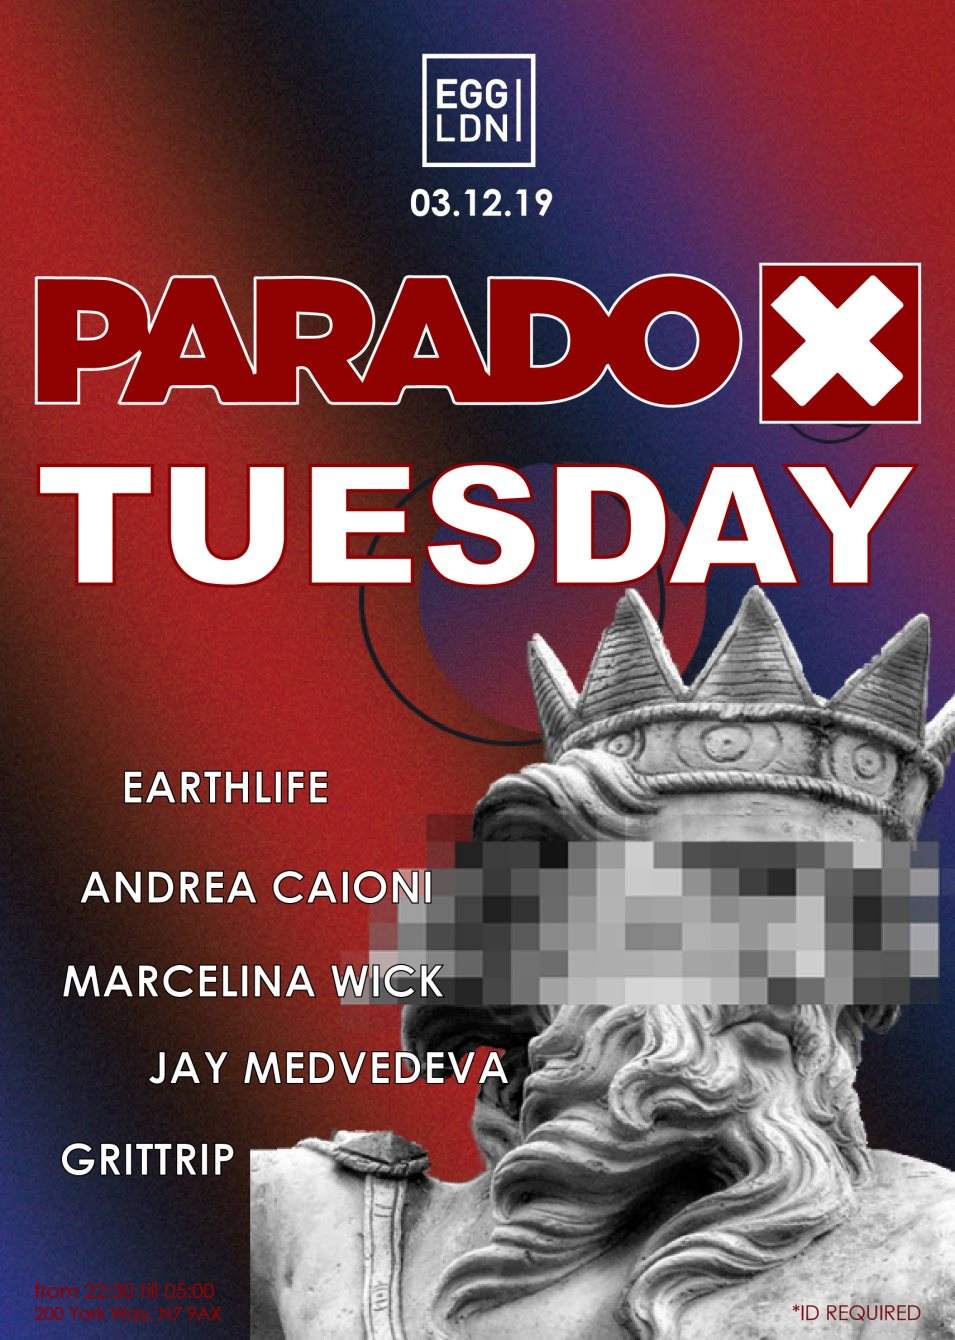 Paradox Tuesday at Egg London - フライヤー裏